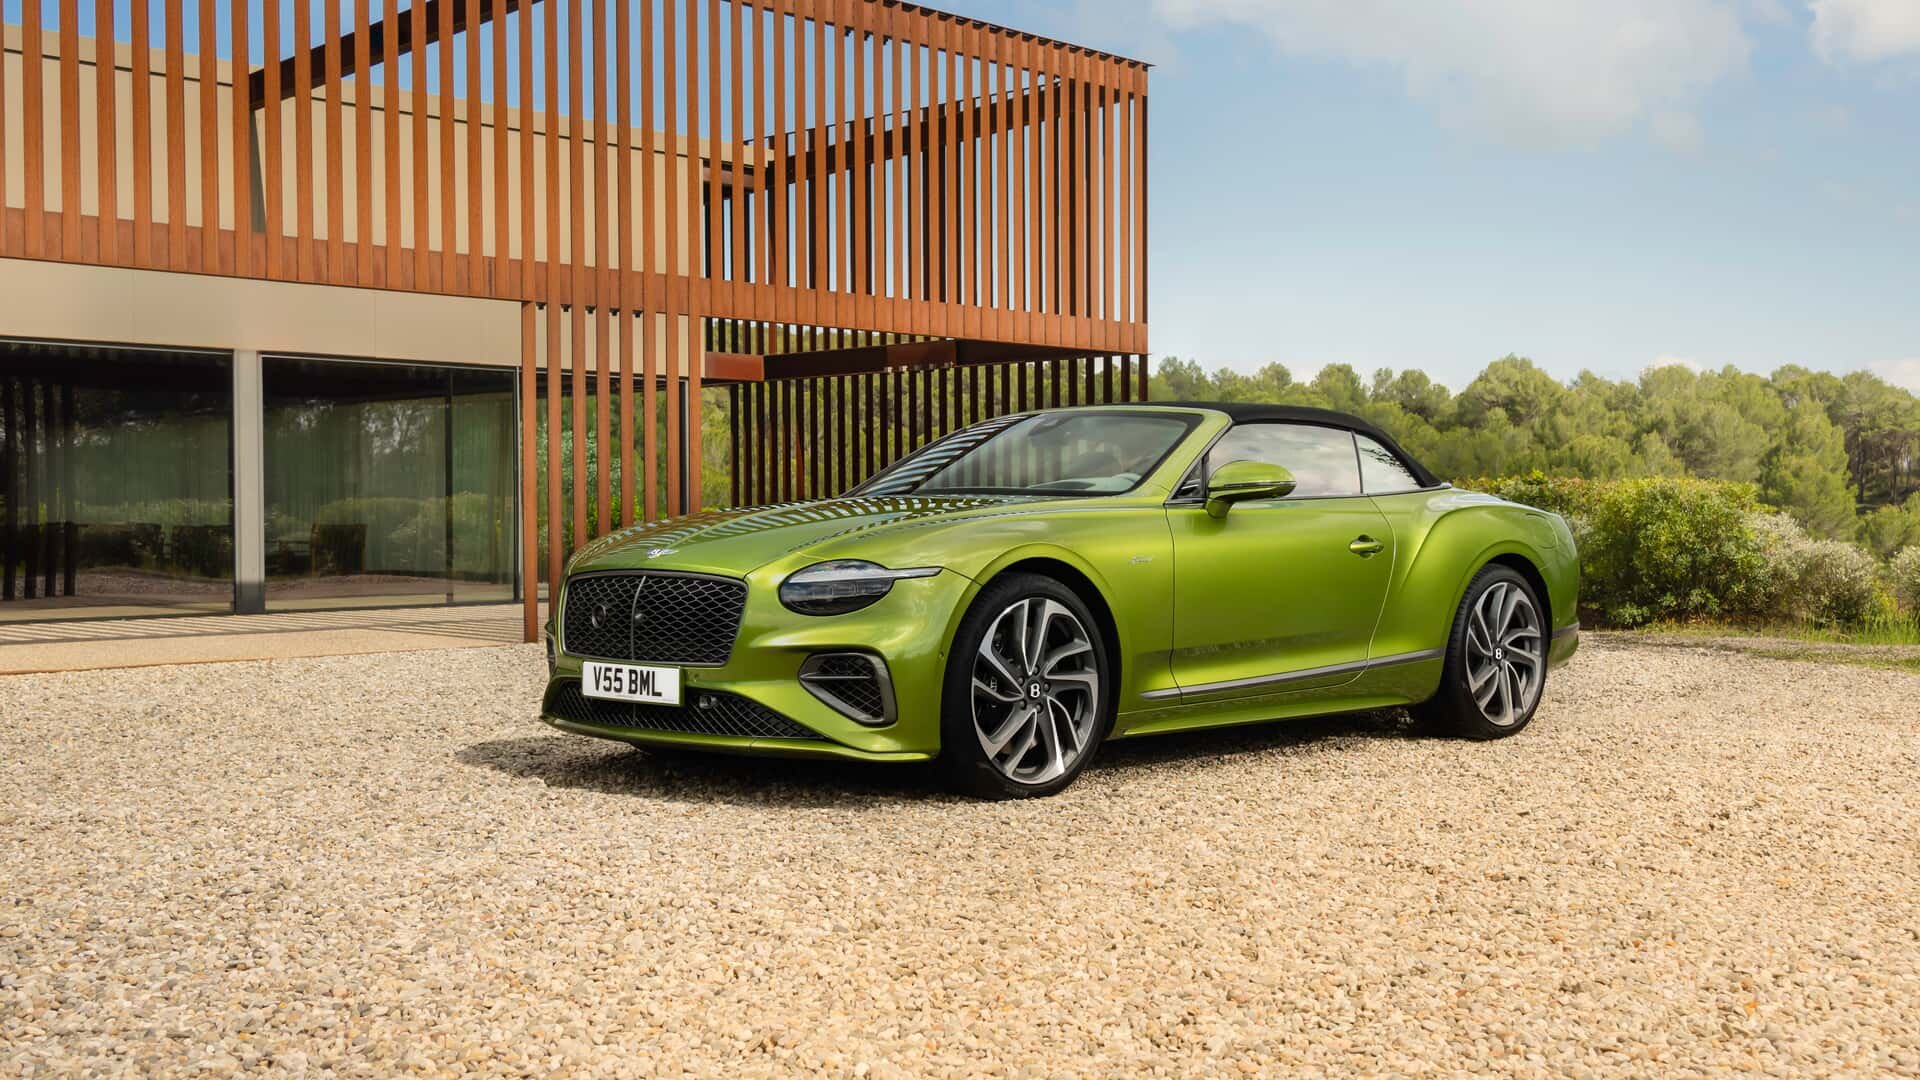 Bentley unveils new Continental GT